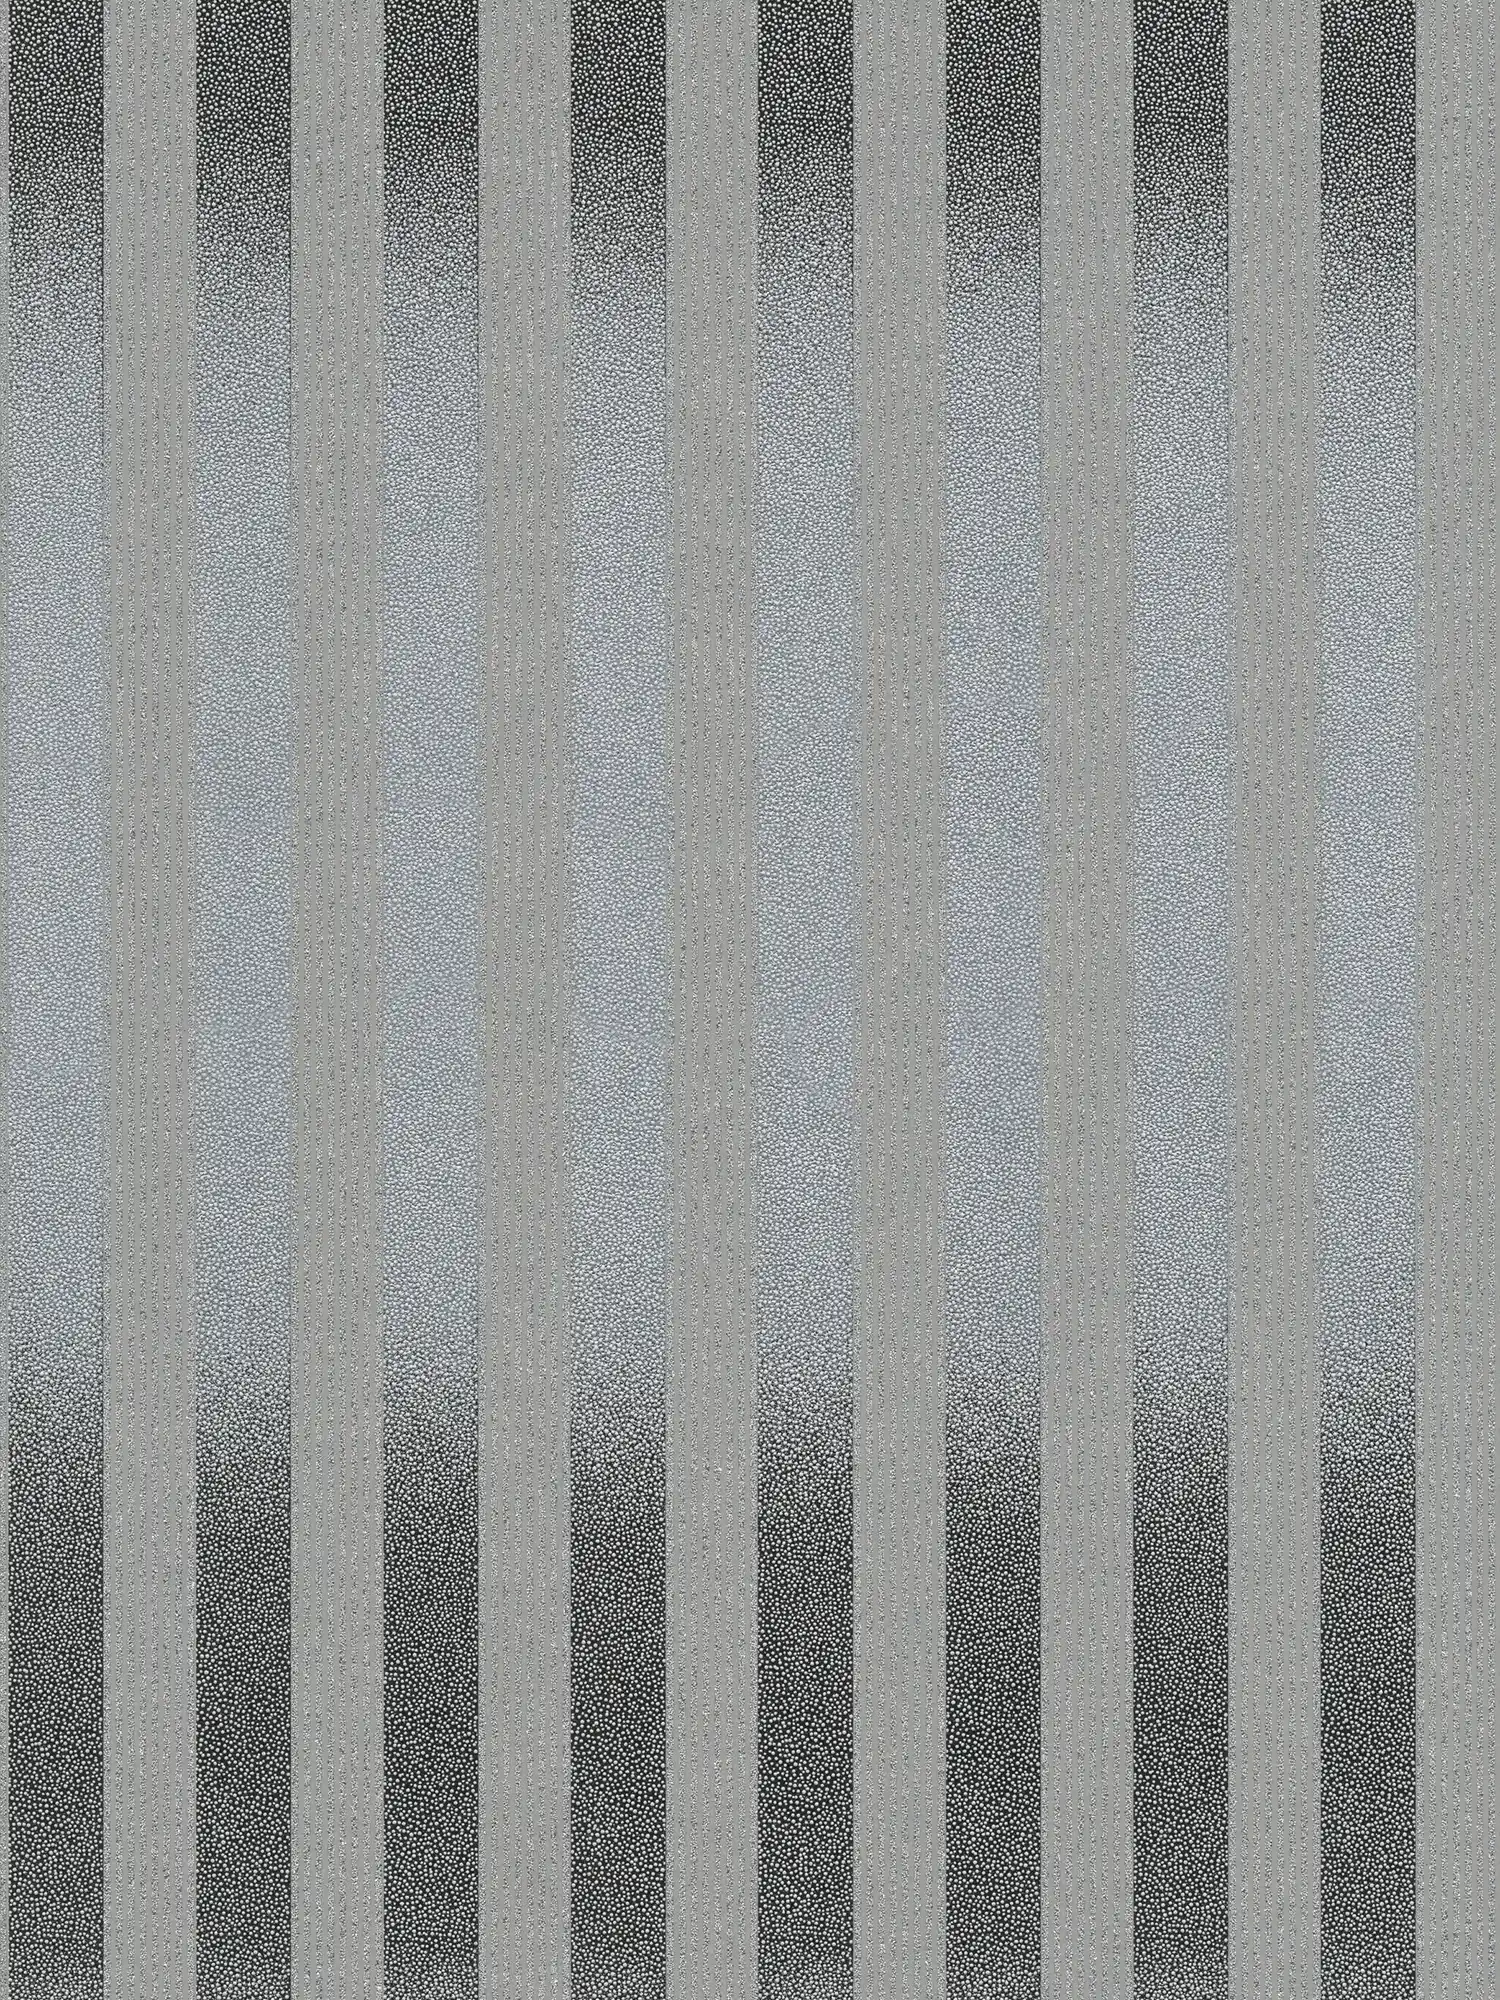 Gestreept behang met klein stippenpatroon en kleurverloop - zwart, grijs
